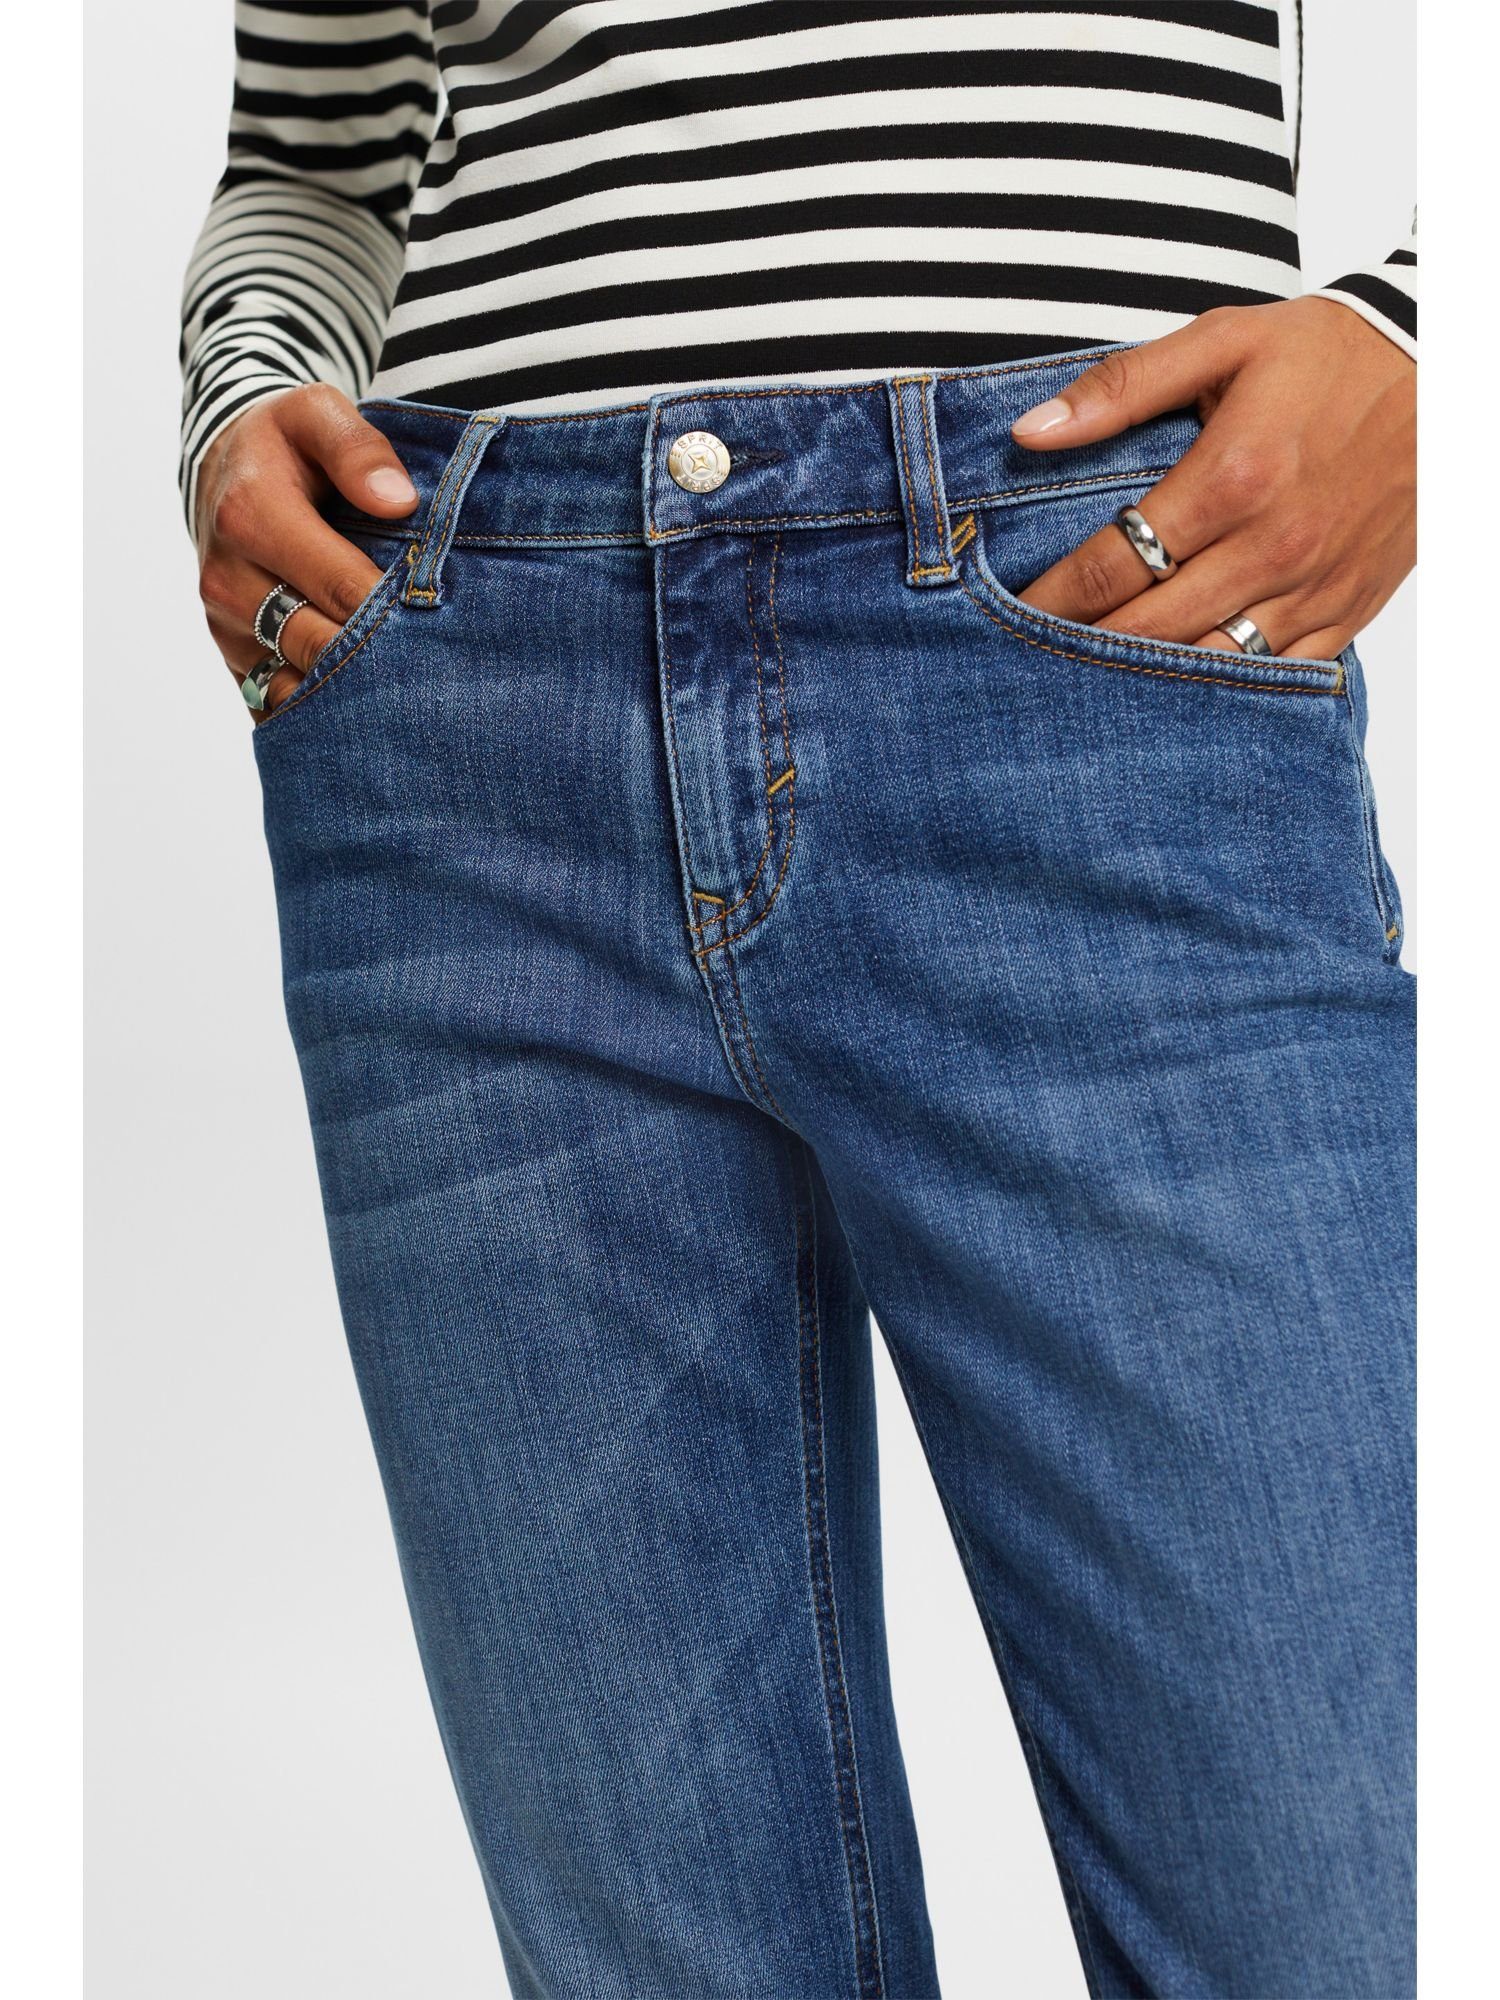 Gerade mittelhohem mit geschnittene Esprit Jeans Straight-Jeans Bund